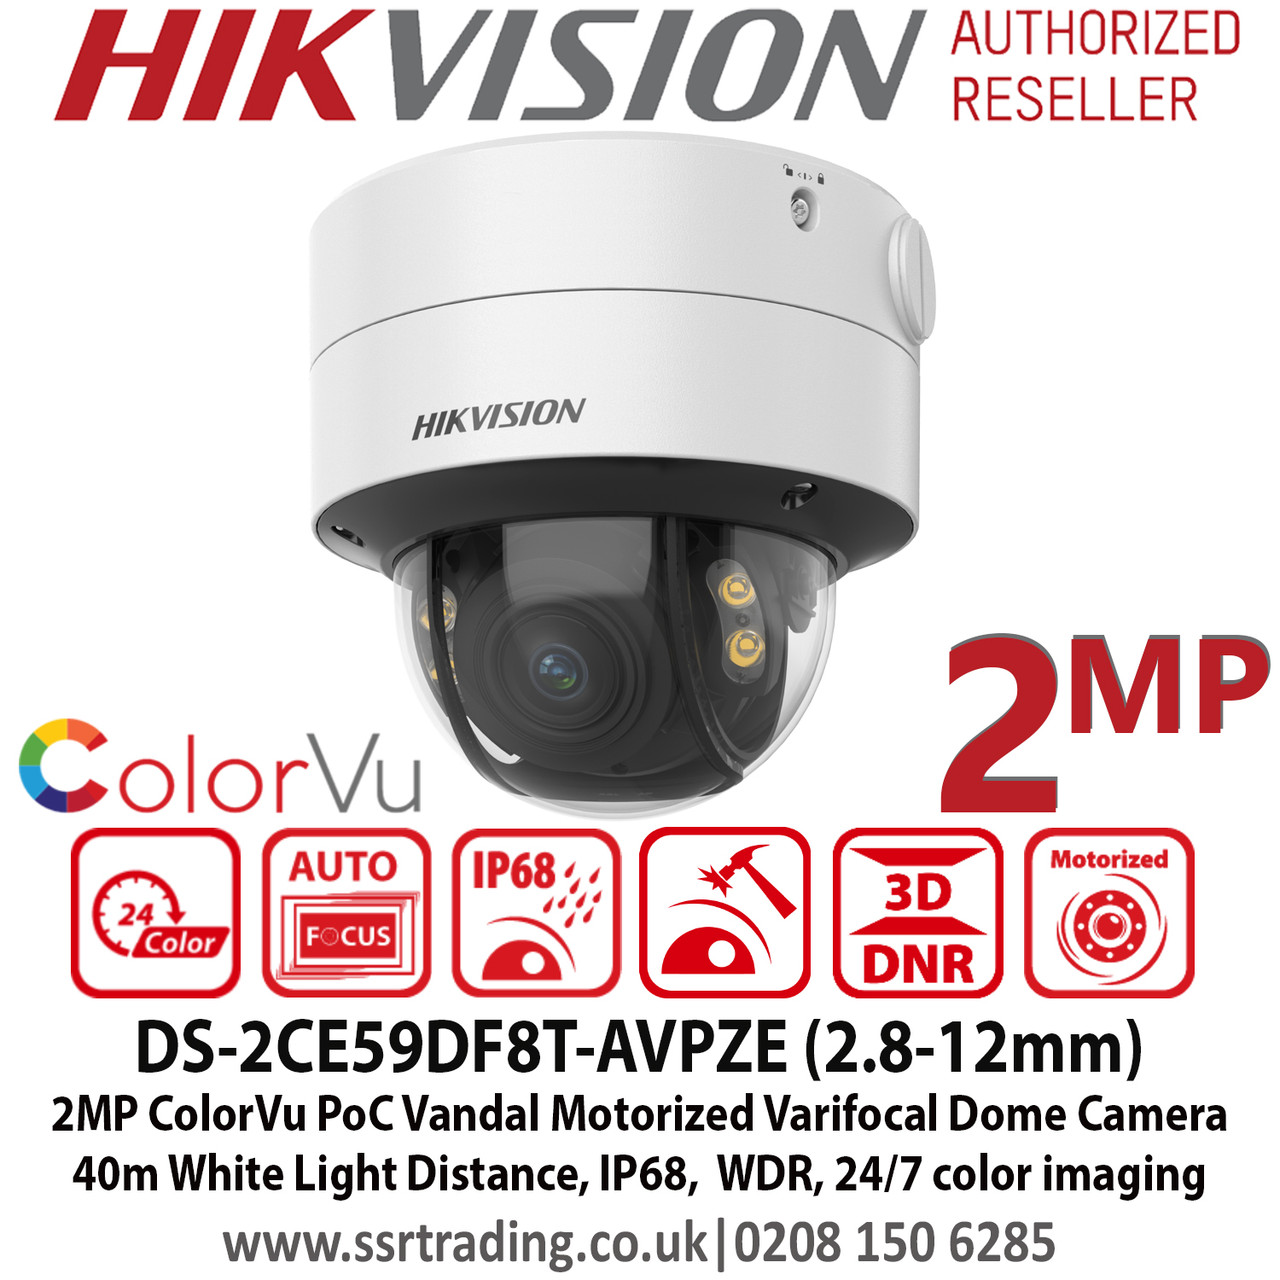 Hikvision 2MP 2.8 - 12mm Motorized Varifocal Lens Auto focus ColorVu ...